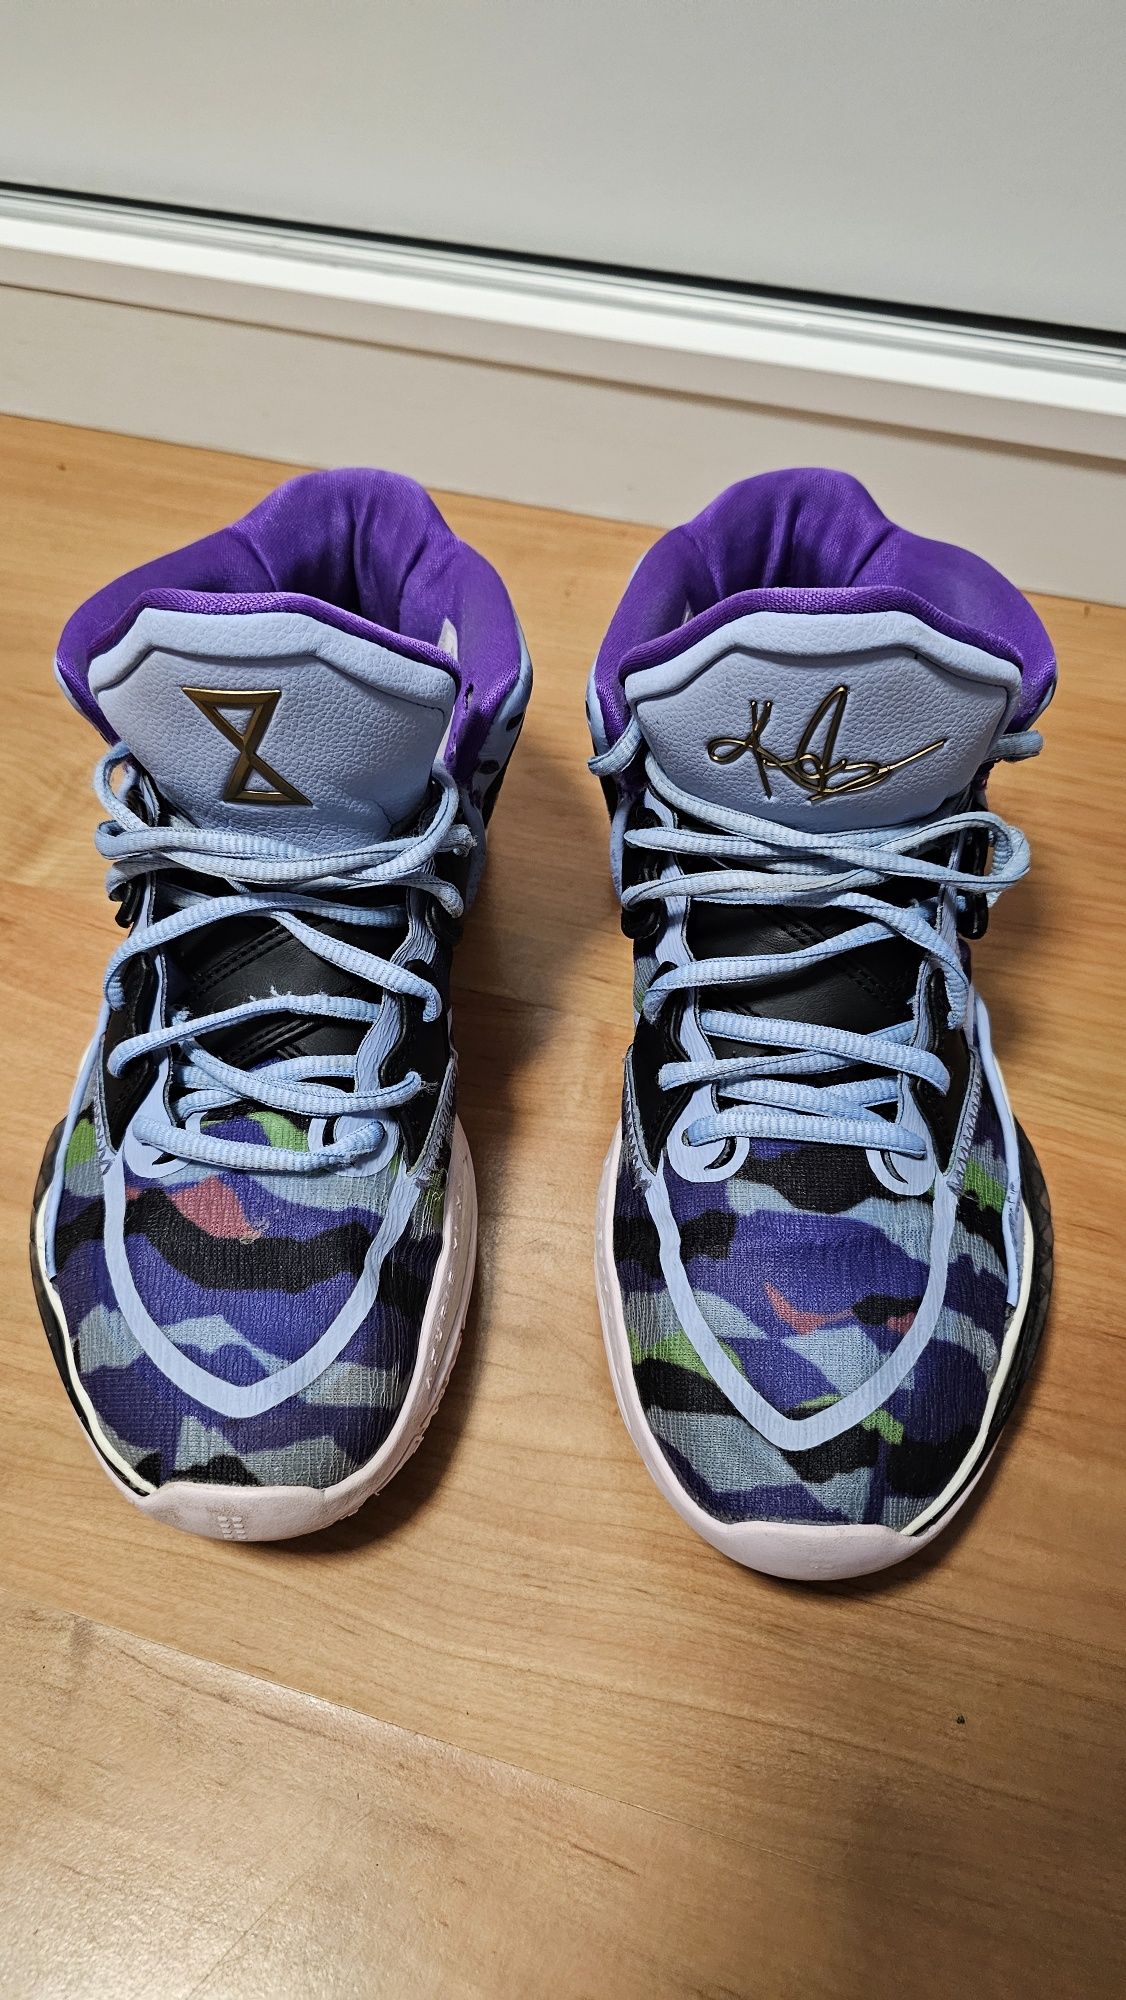 Баскетболни обувки Kyrie infinity